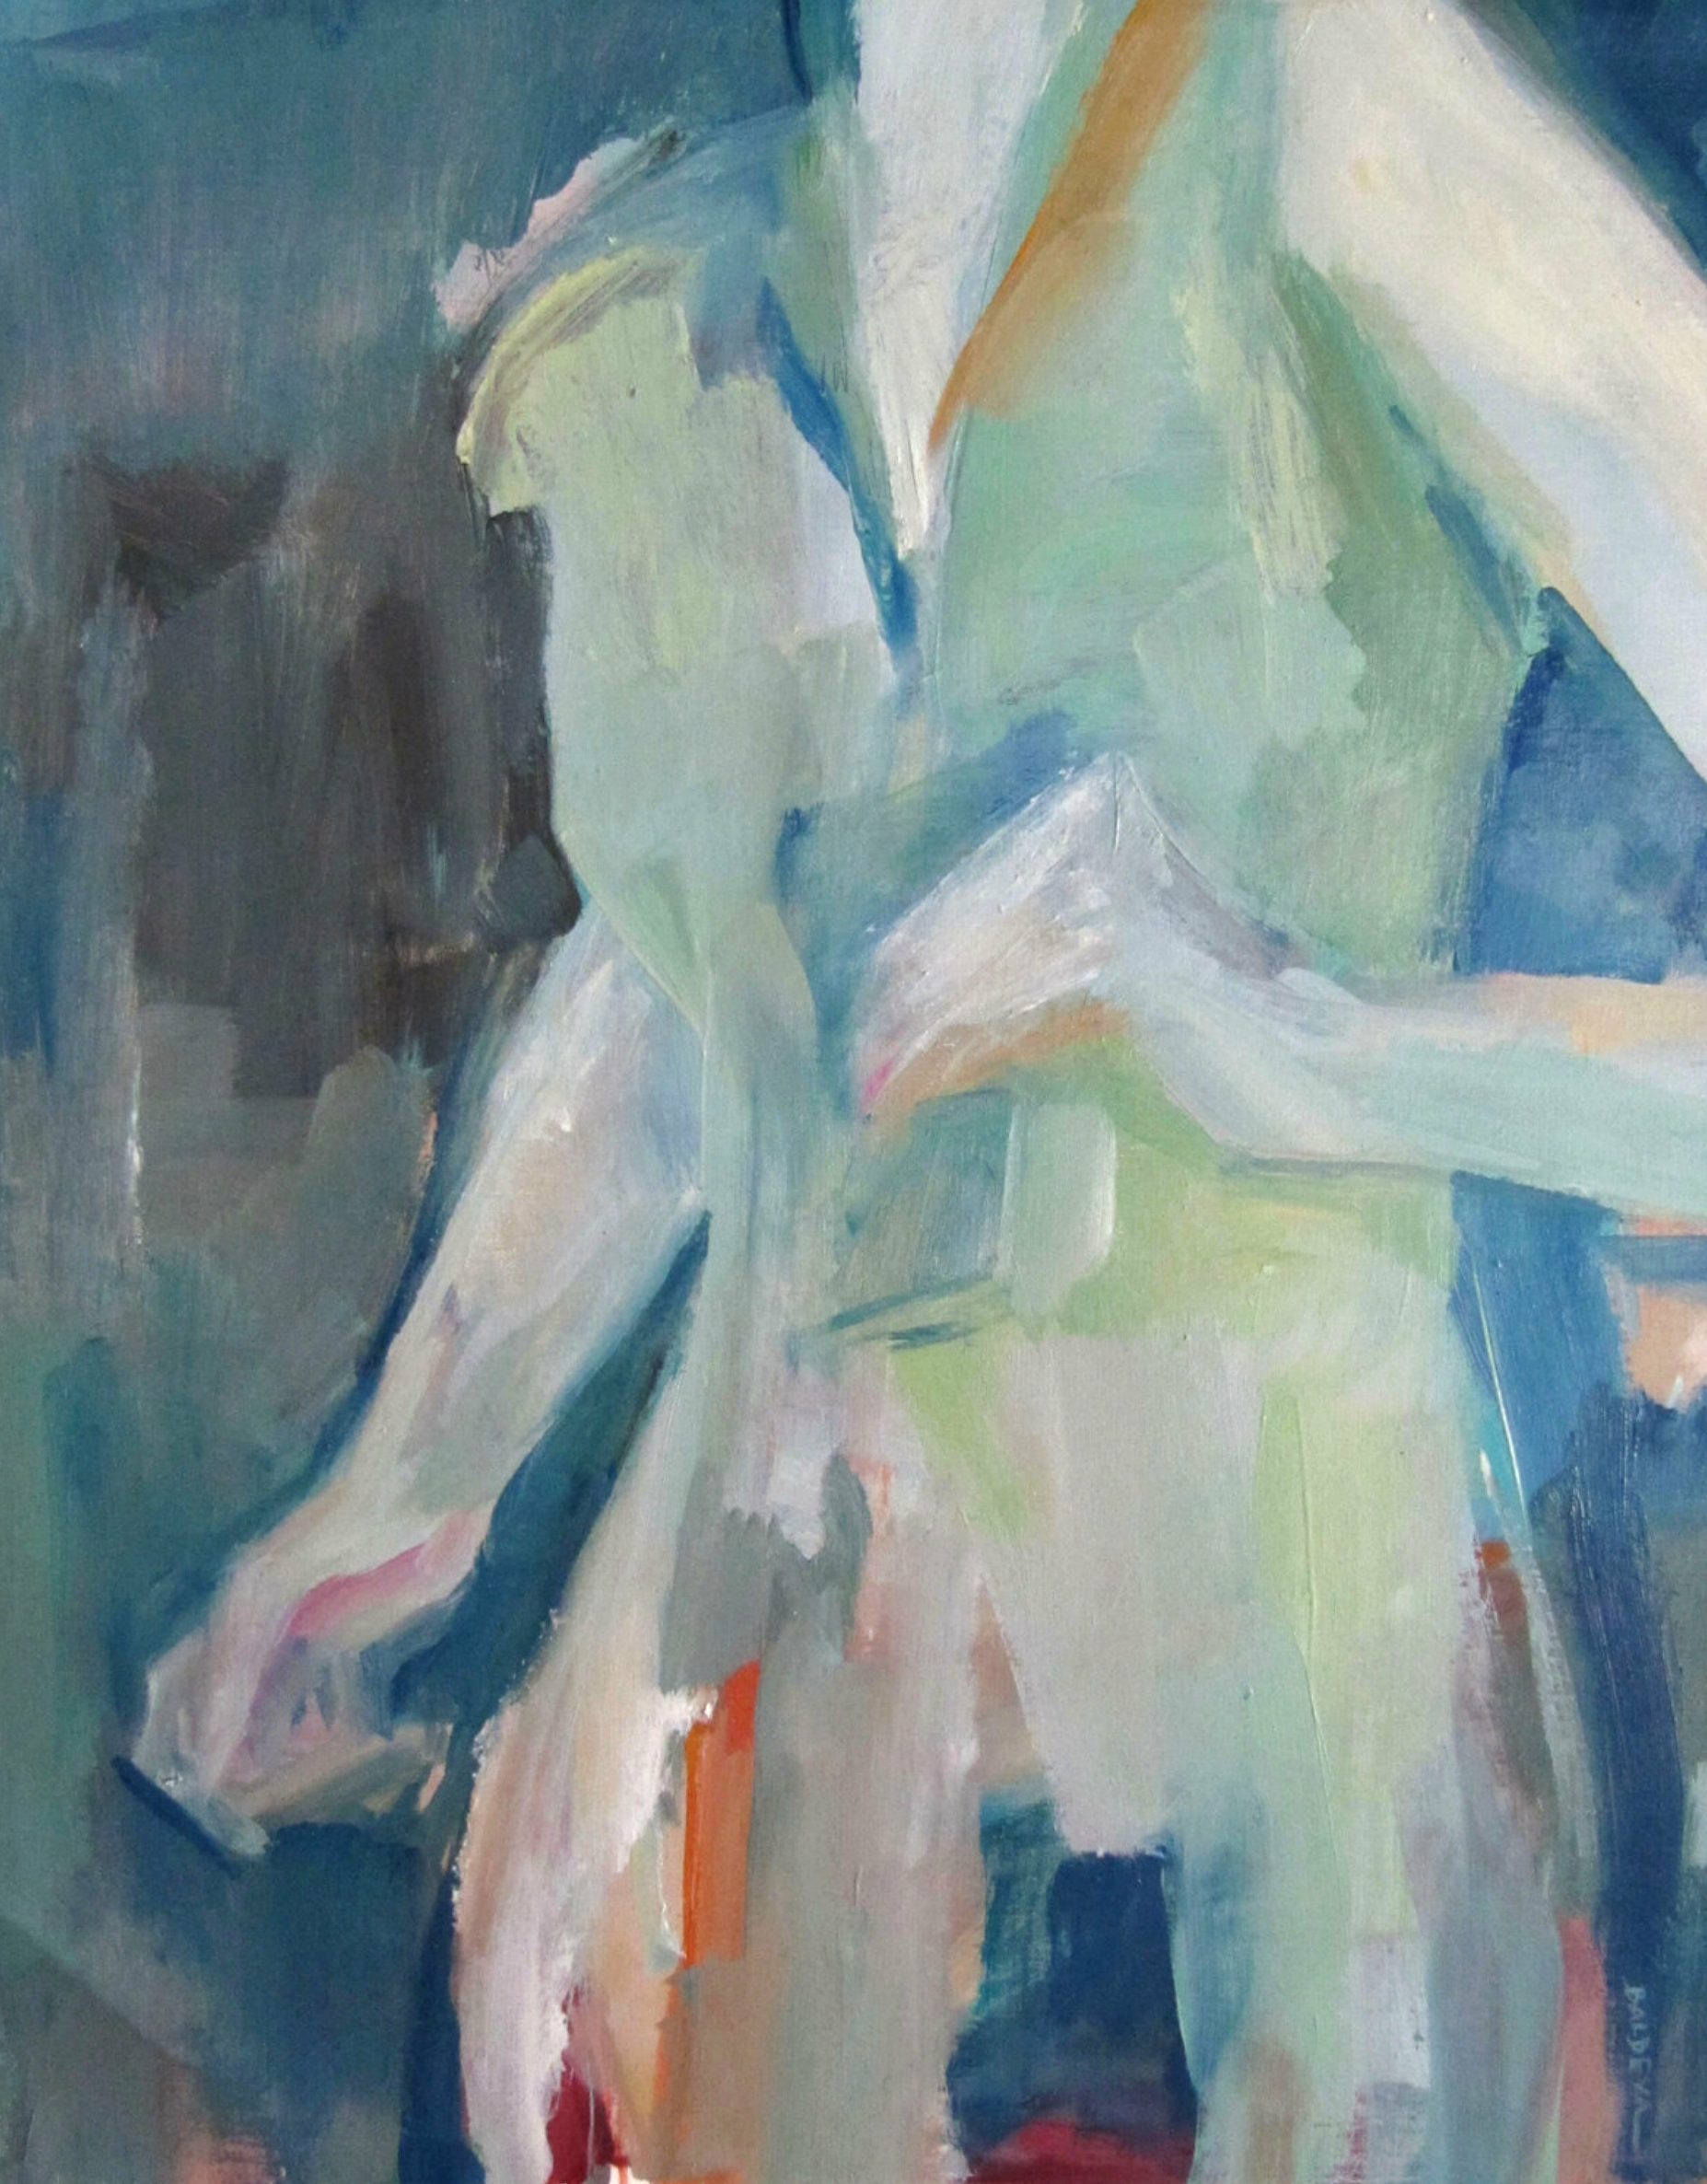 L'opera "Cource" di Sylvia Baldeva mostra un dipinto a olio semi-astratto.  Primo piano di una donna che cammina in una scena di vita.